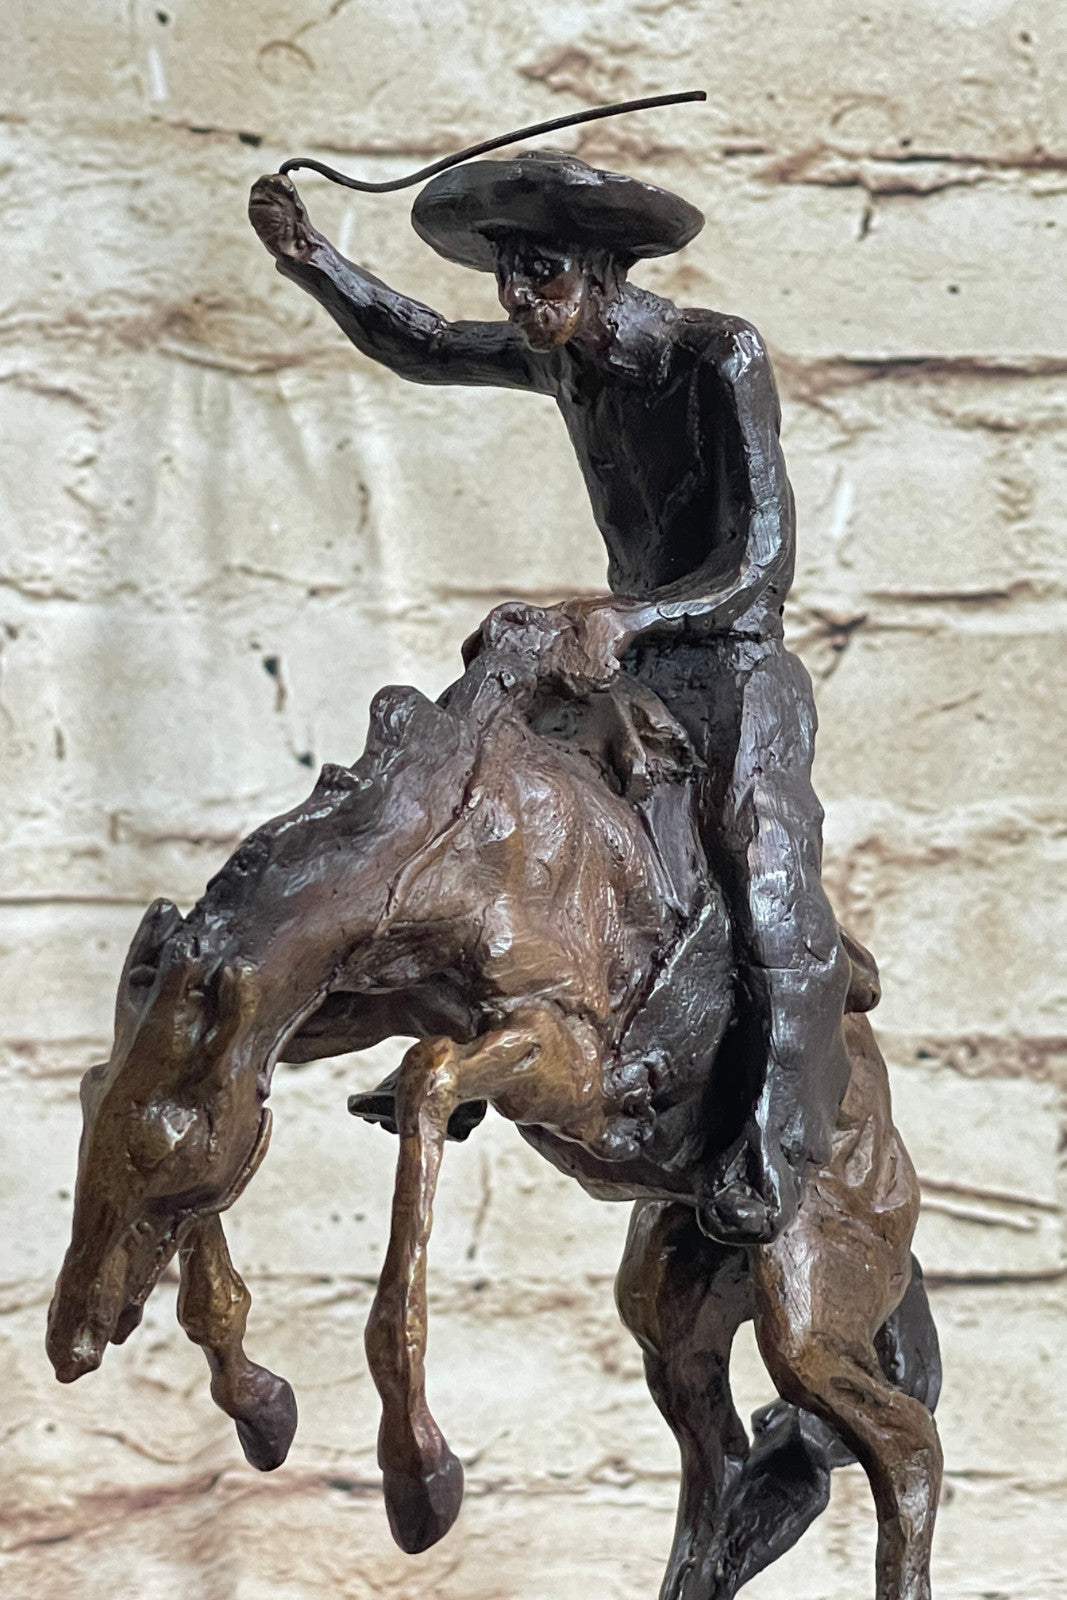 Bronco Buster by Remington Bronze Sculpture Art Deco Hot Cast Figurine Figure